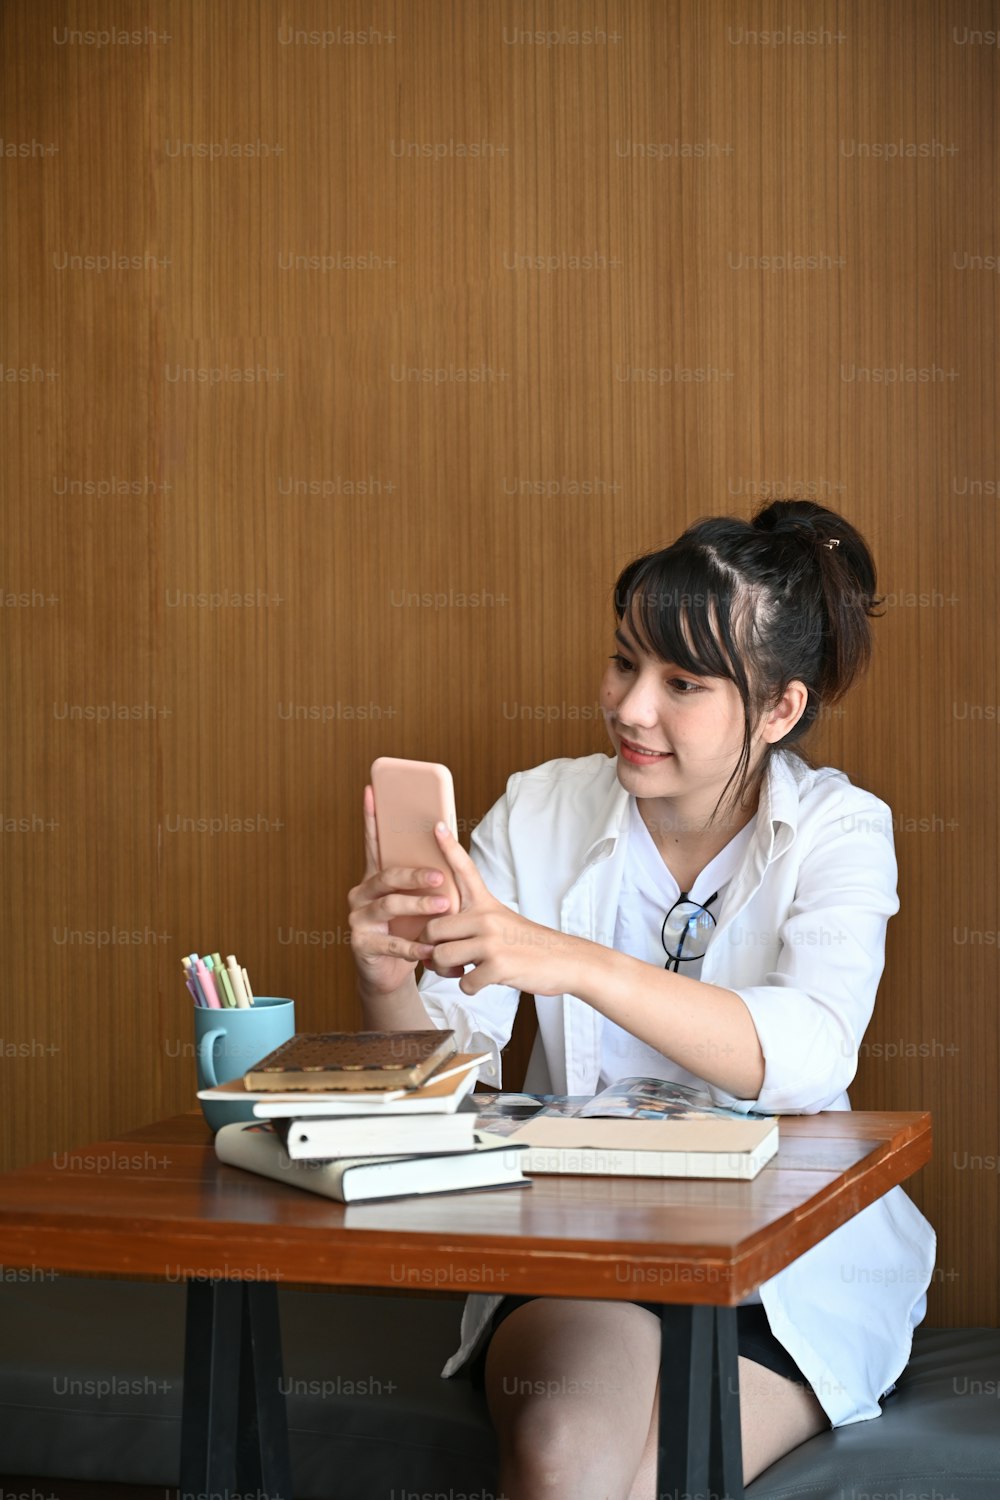 Retrato de una hermosa mujer joven sentada en una cafetería y usando un teléfono móvil.